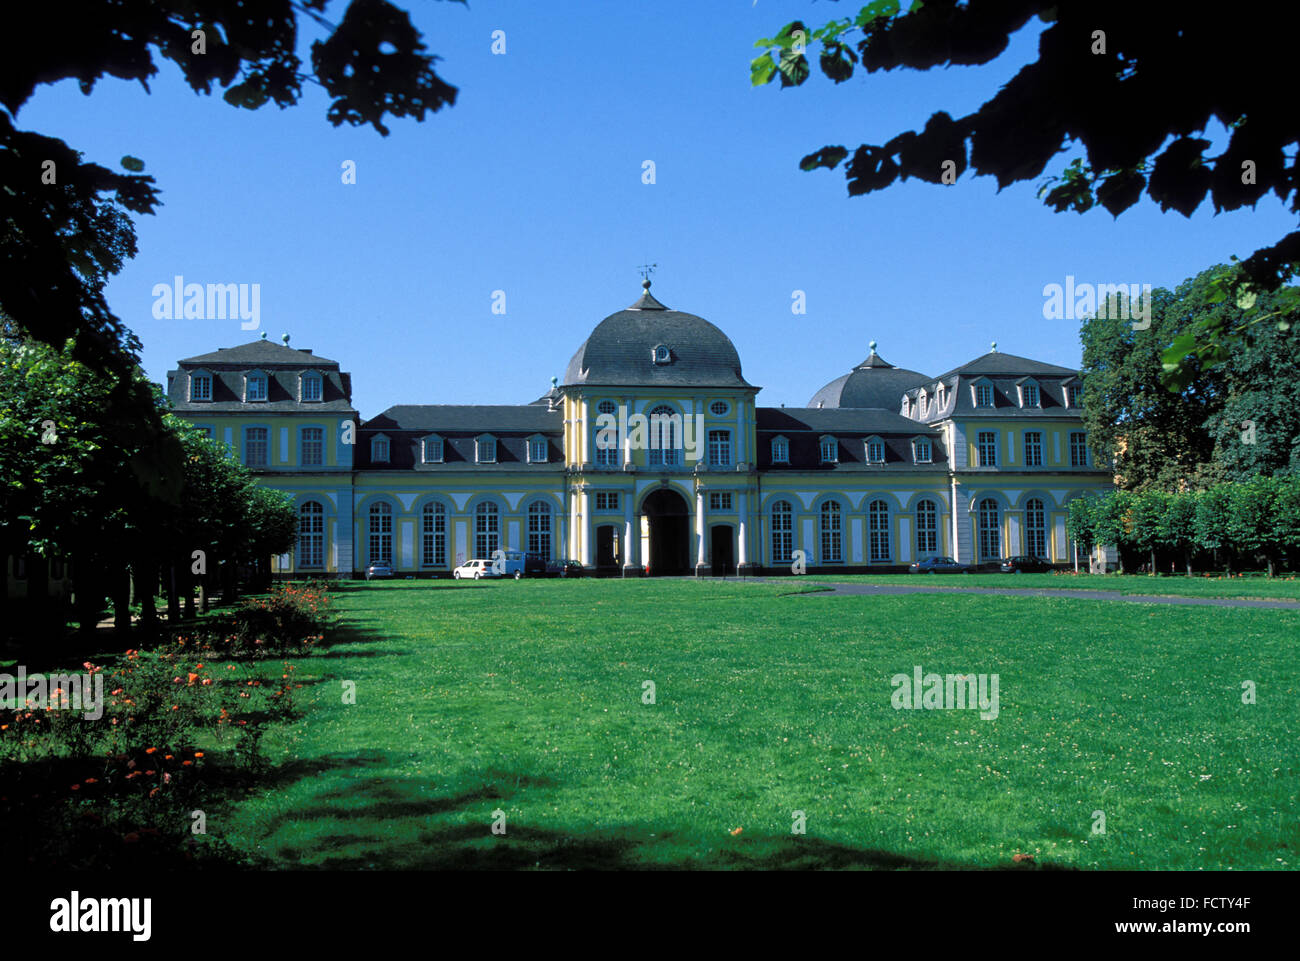 DEU, Allemagne, Bonn, le château de Poppelsdorf. DEU, Deutschland, Bonn, Das Schloss Poppelsdorf. Banque D'Images